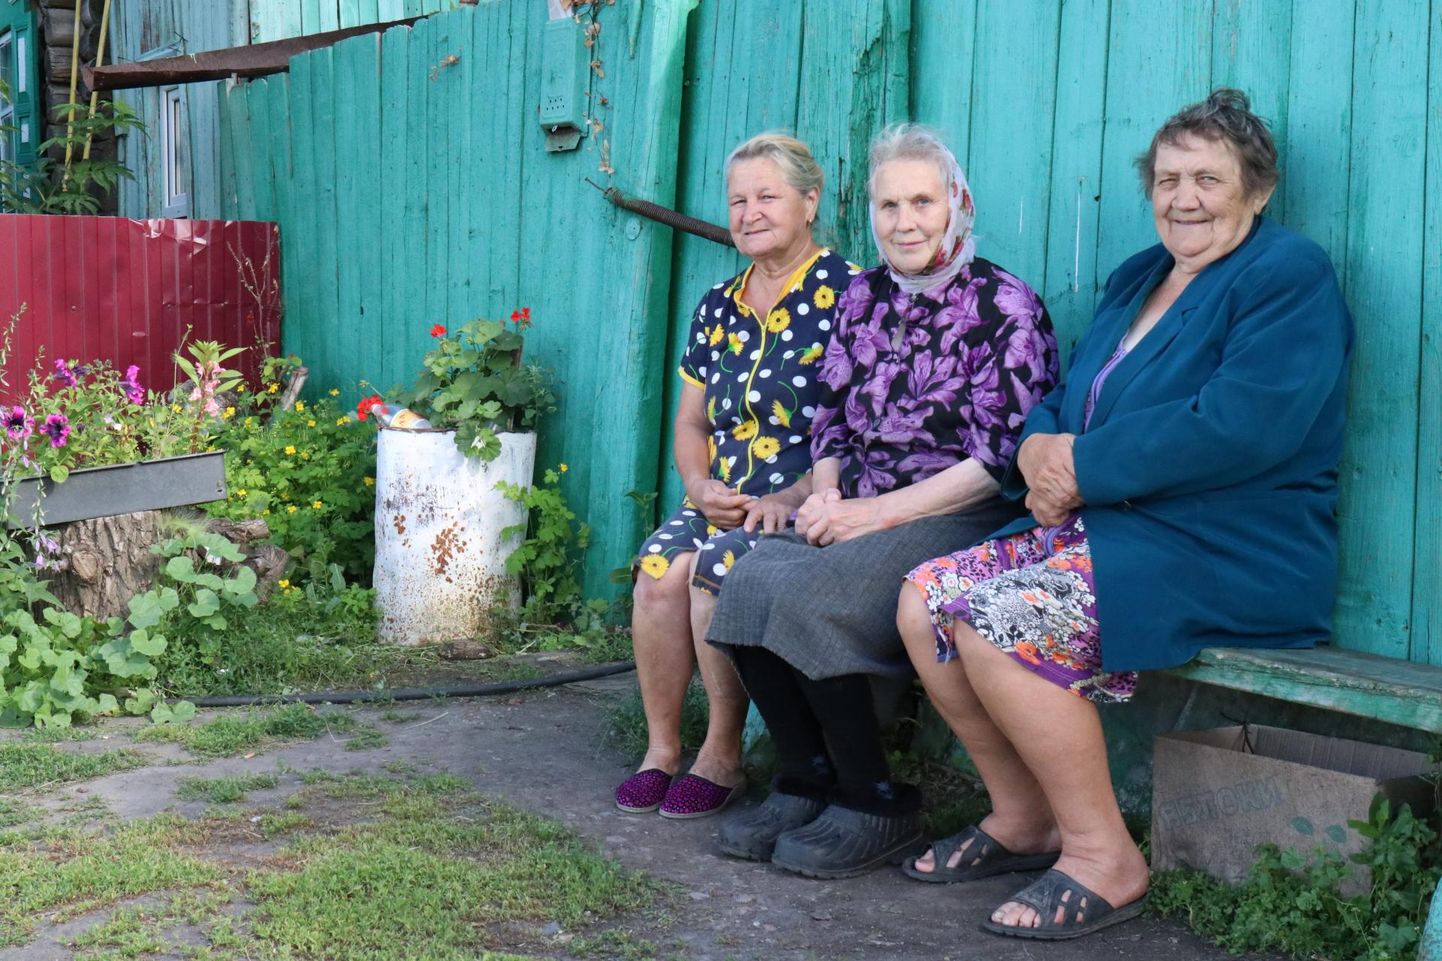 Kovaljovo lõbusad naised (vasakult) Galina Puss, Silvi Rozintseva (Adamson) ja Milvi Petrova (Einbaum) istuvad Milvi tare ees. Kaks abikaasat matnud Milvi elab küla kunagise eesti kooli palkidest ehitatud majas ning peab kasse ja parte.